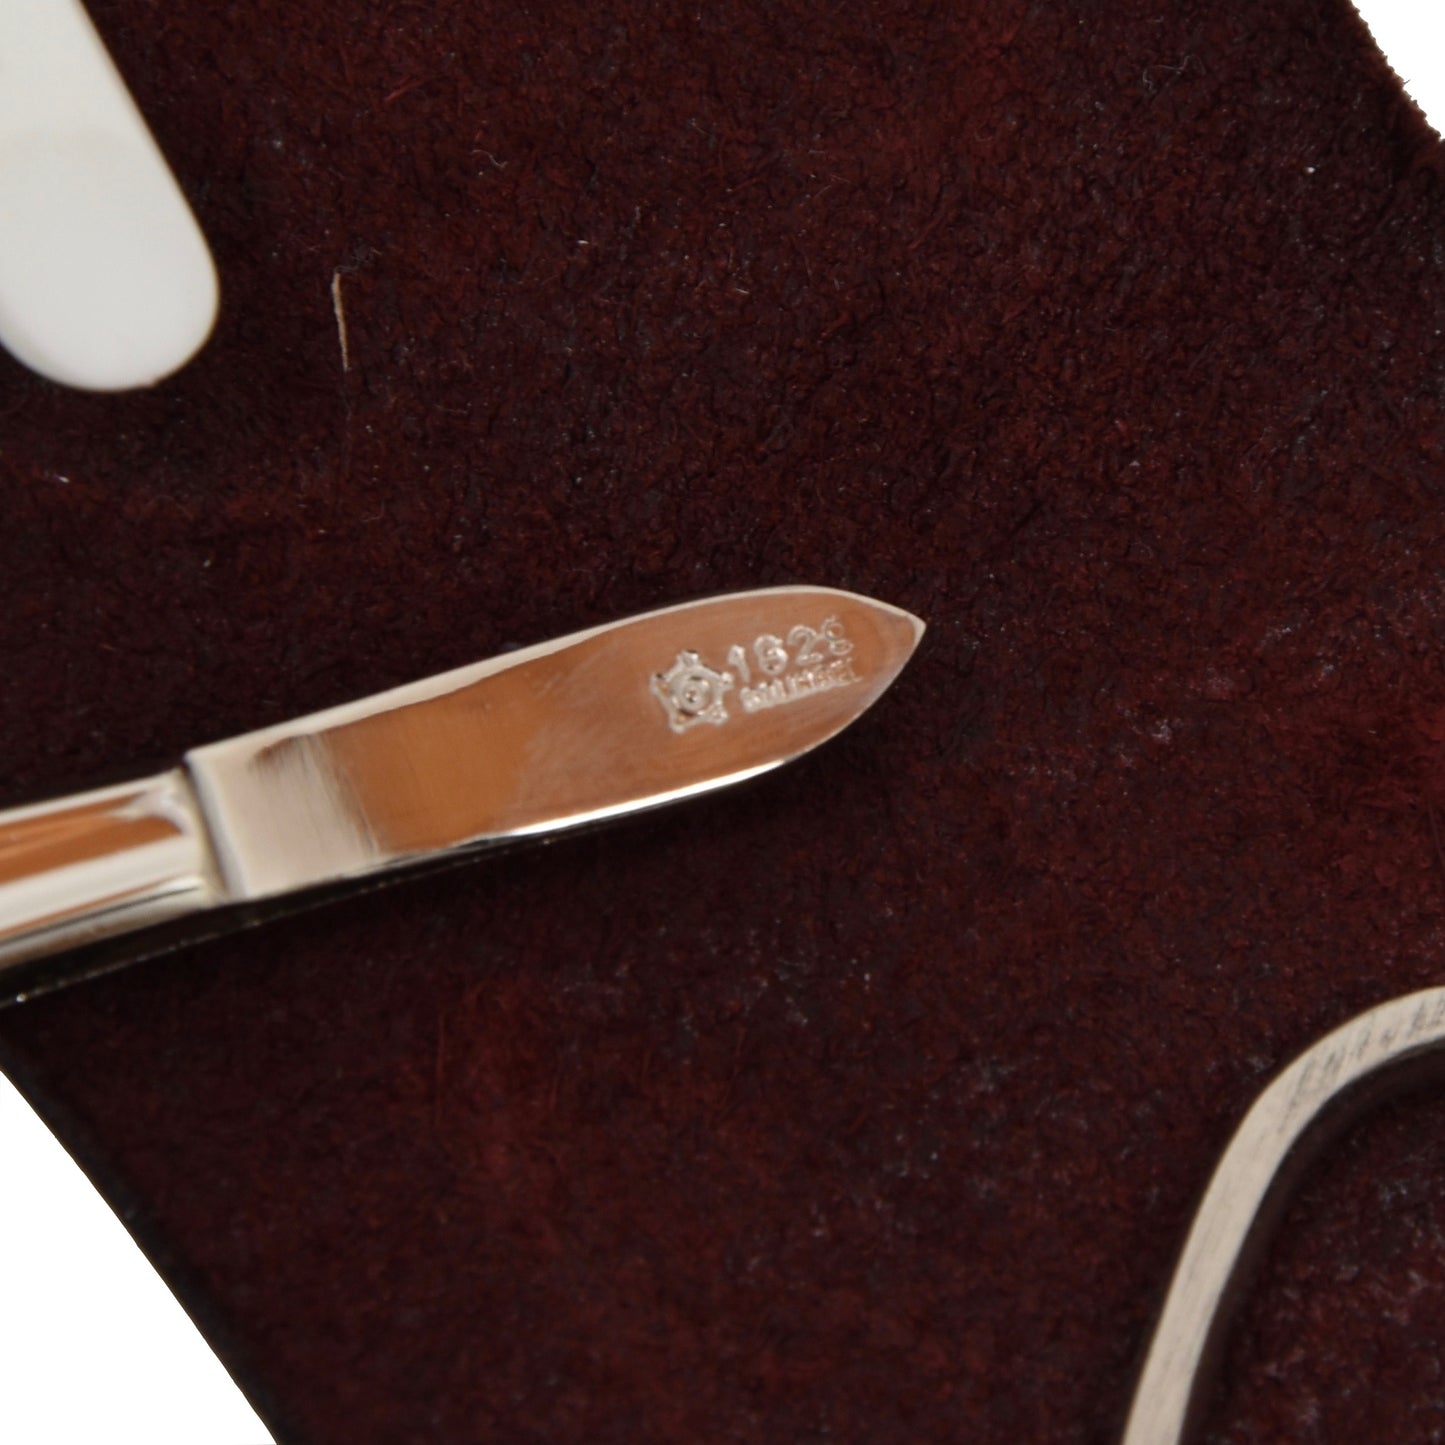 Pfeilring 3 Piece Manicure Set + Leather Case